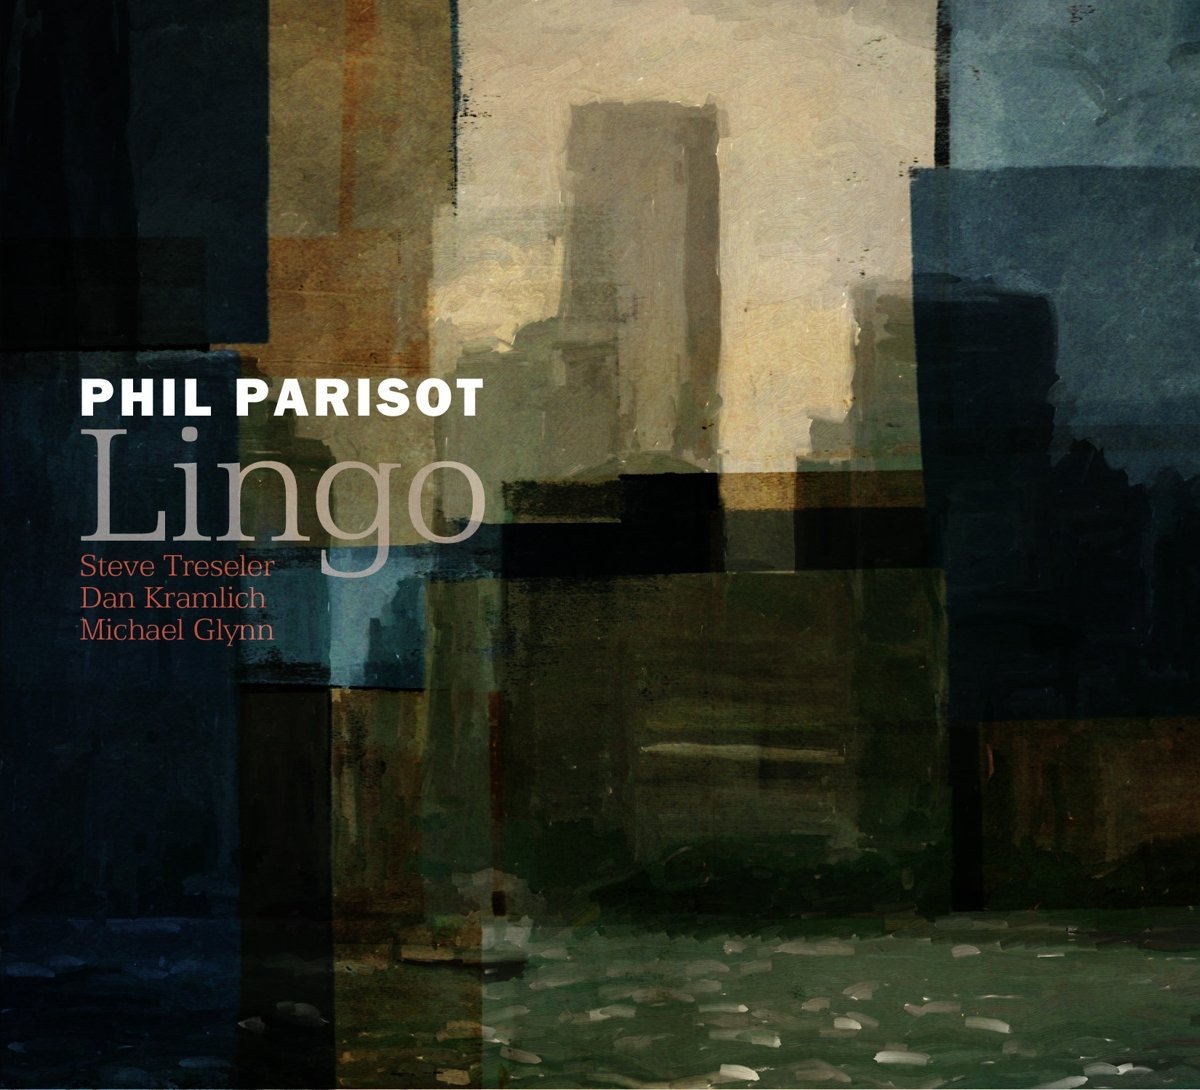 PHIL PARISOT - Lingo cover 